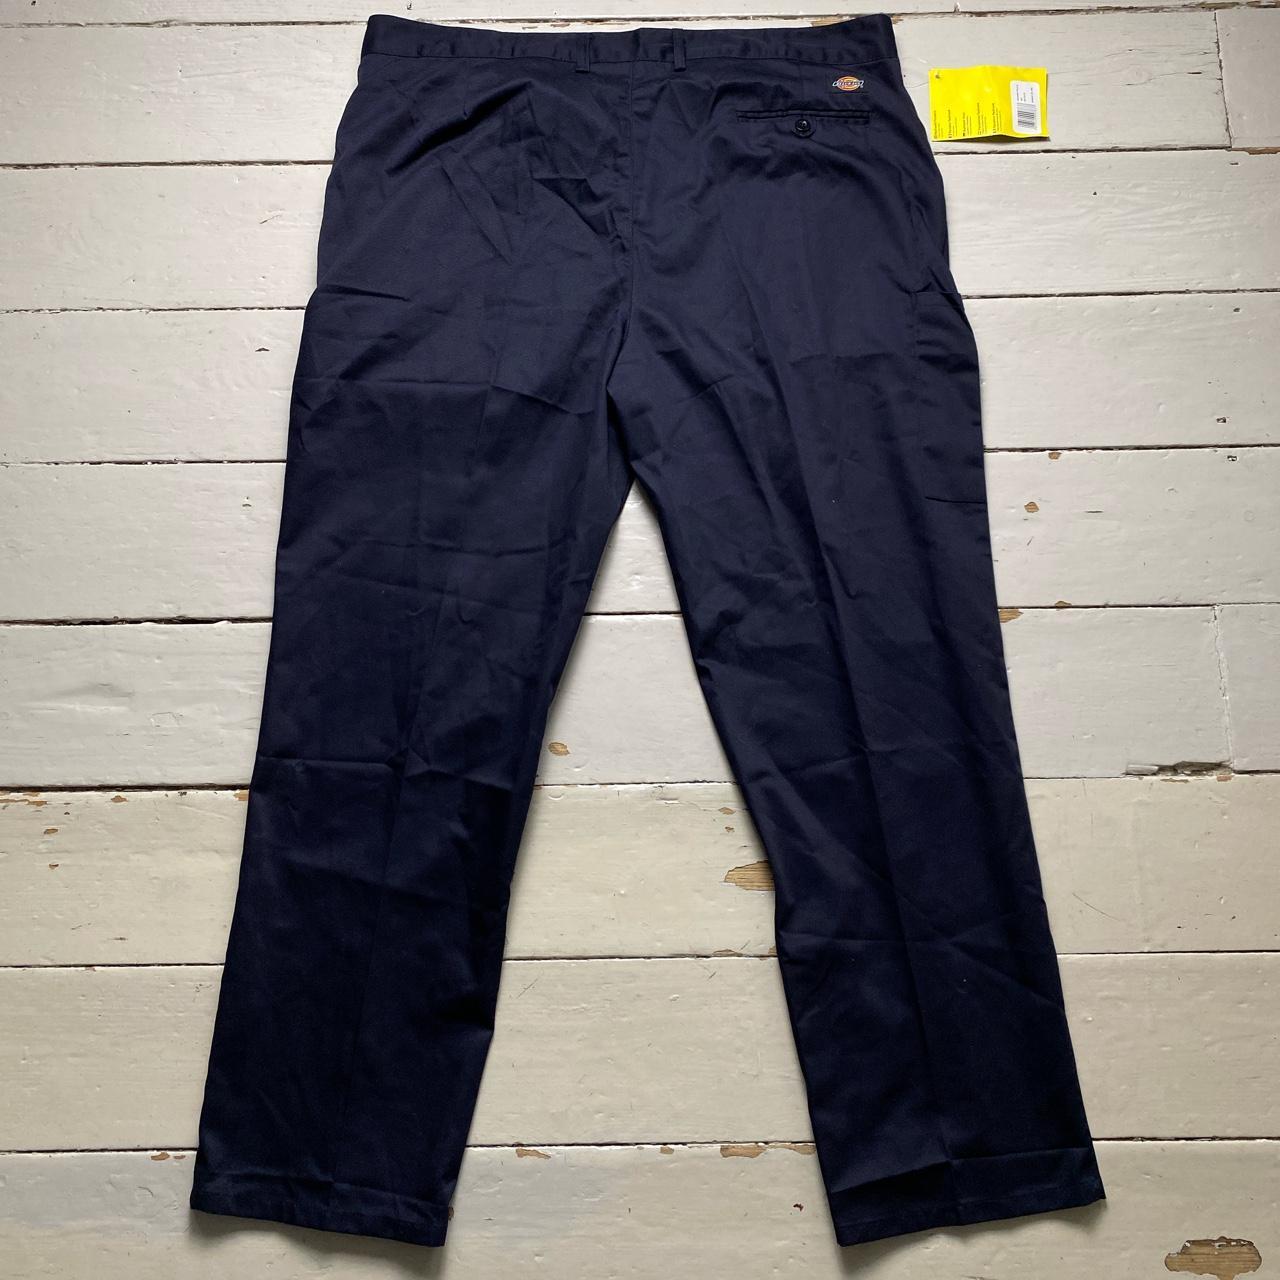 Dickies Redhawk Navy Blue Work Cargo Trousers